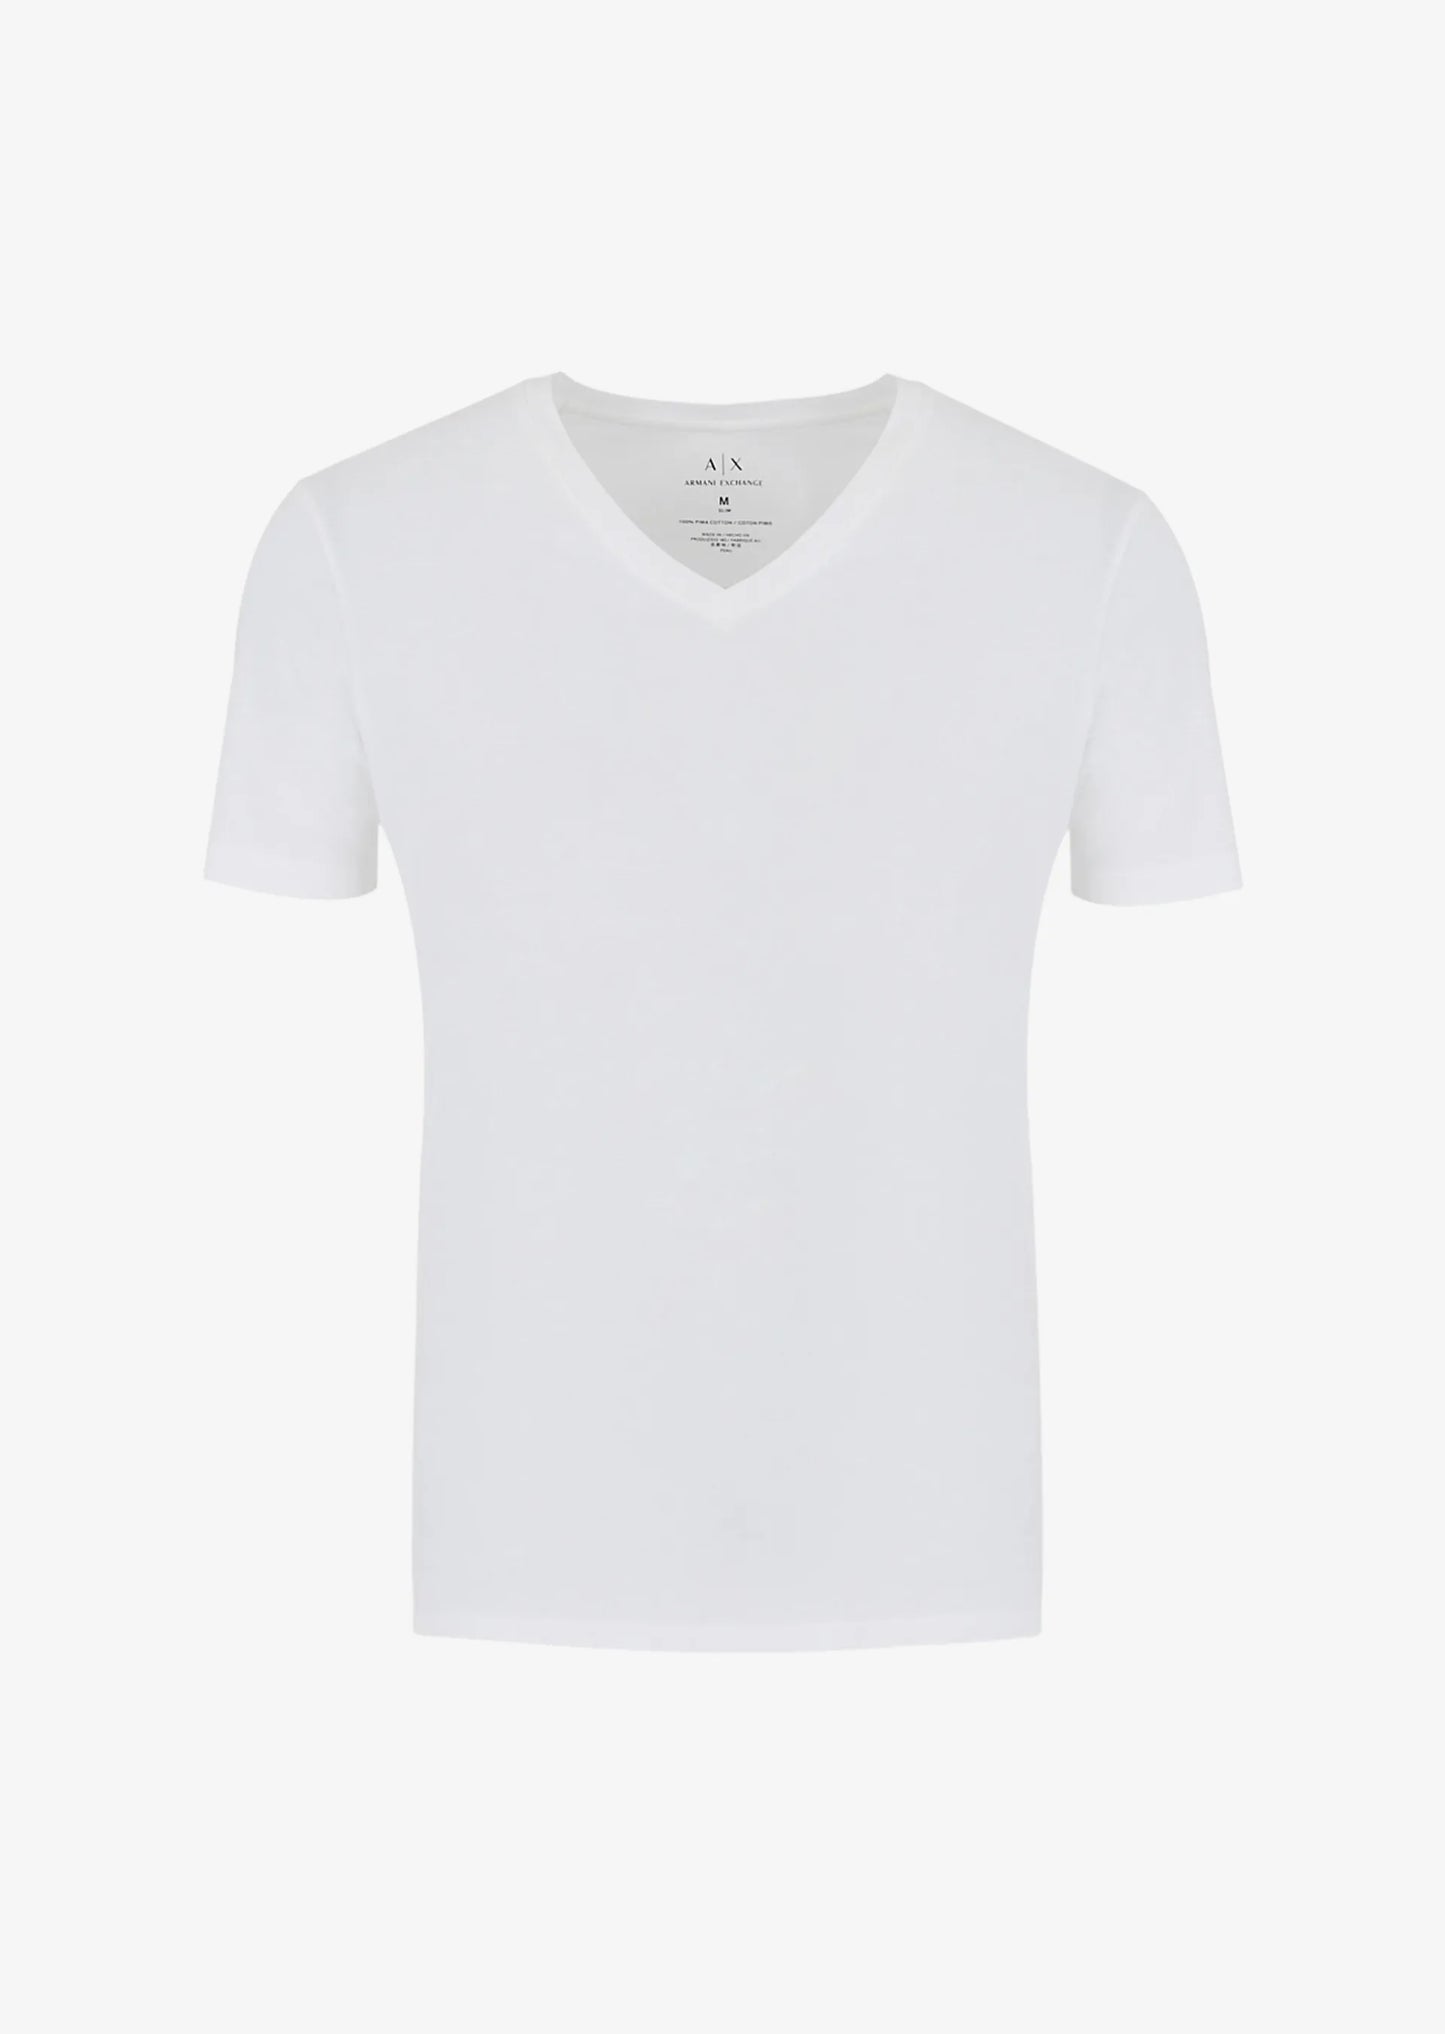 Regular fit white Armani Exchange jersey T-shirt